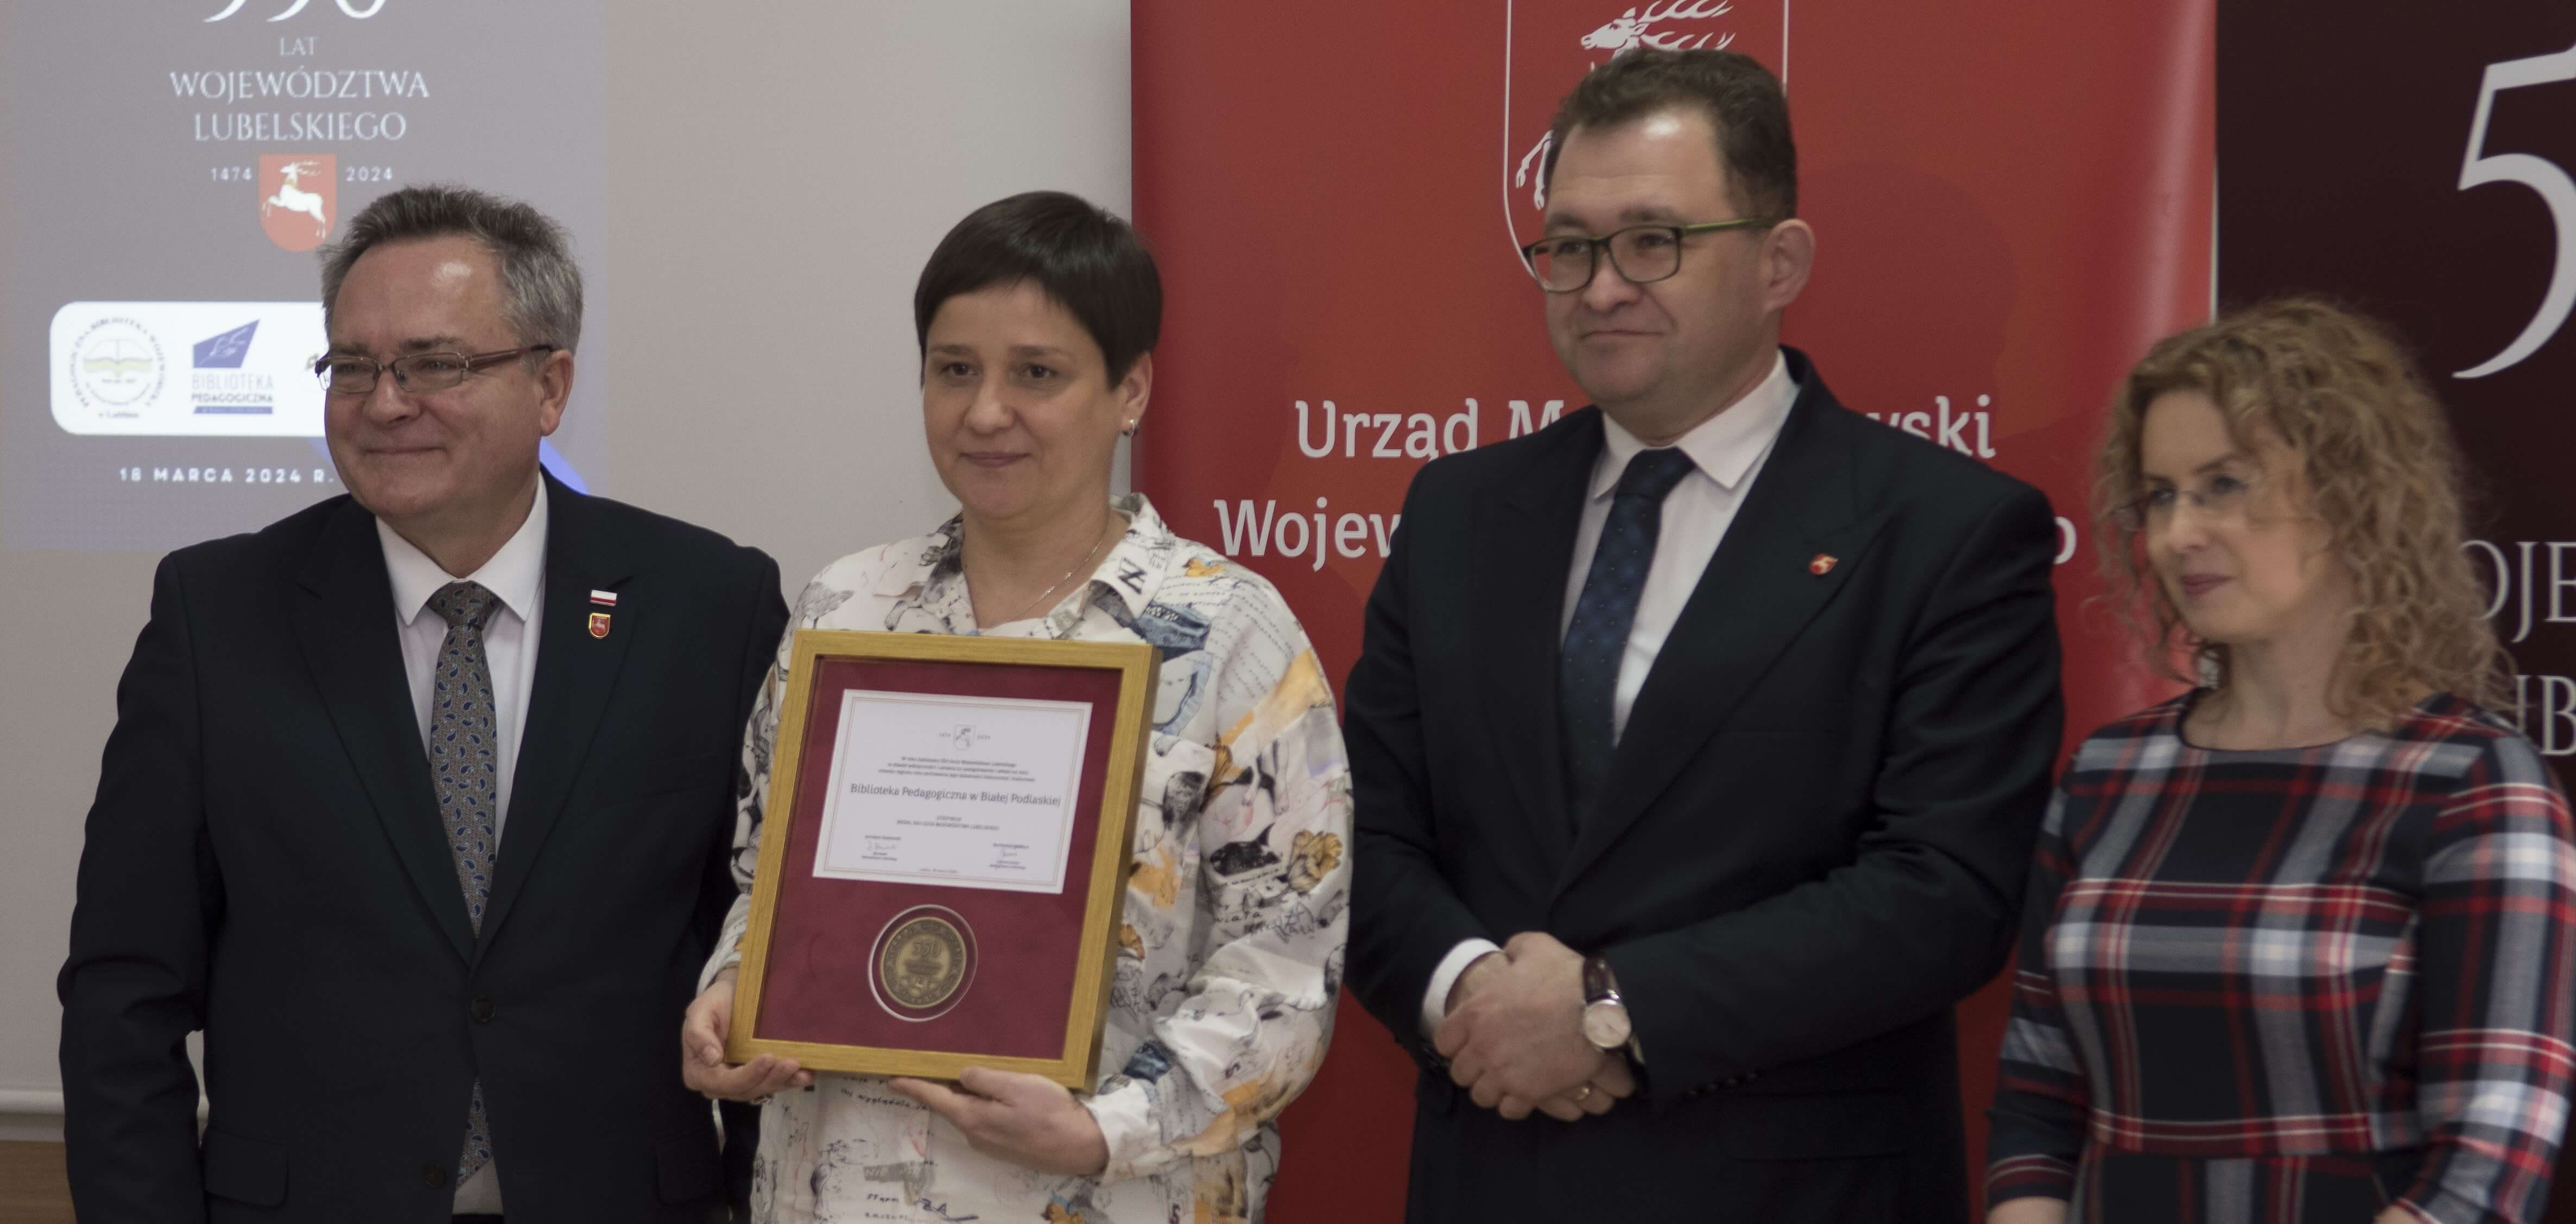 Wicedyrektor Biblioteki Pedagogicznej w Białej Podlaskiej prezentuje medal otrzymany z okazji jubileuszu 550-lecia województwa lubelskiego. Po obu stronach wicedyrektor stoją dwaj przedstawiciele Urzędu Marszałkowskiego w Lublinie.